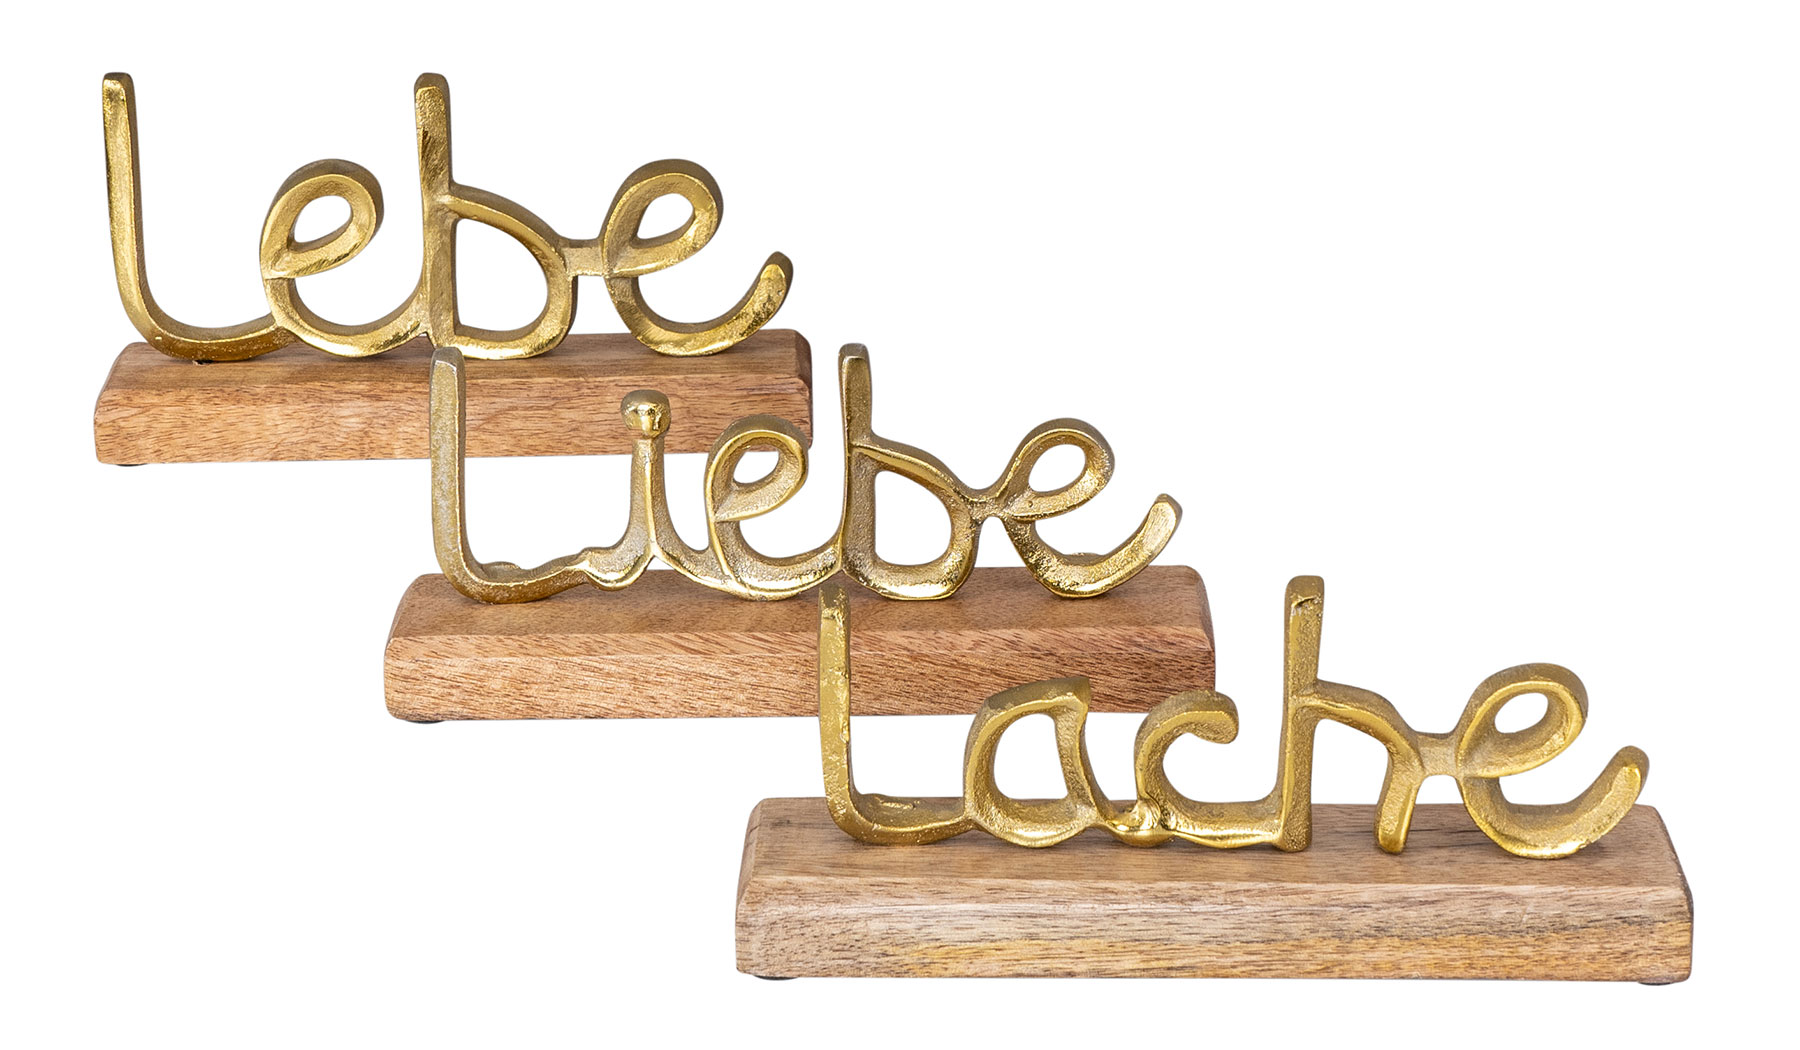 3er Gold Lebe Set Tisch-Deko Schriftzug Holz Liebe Mango L22cm Metall Lache